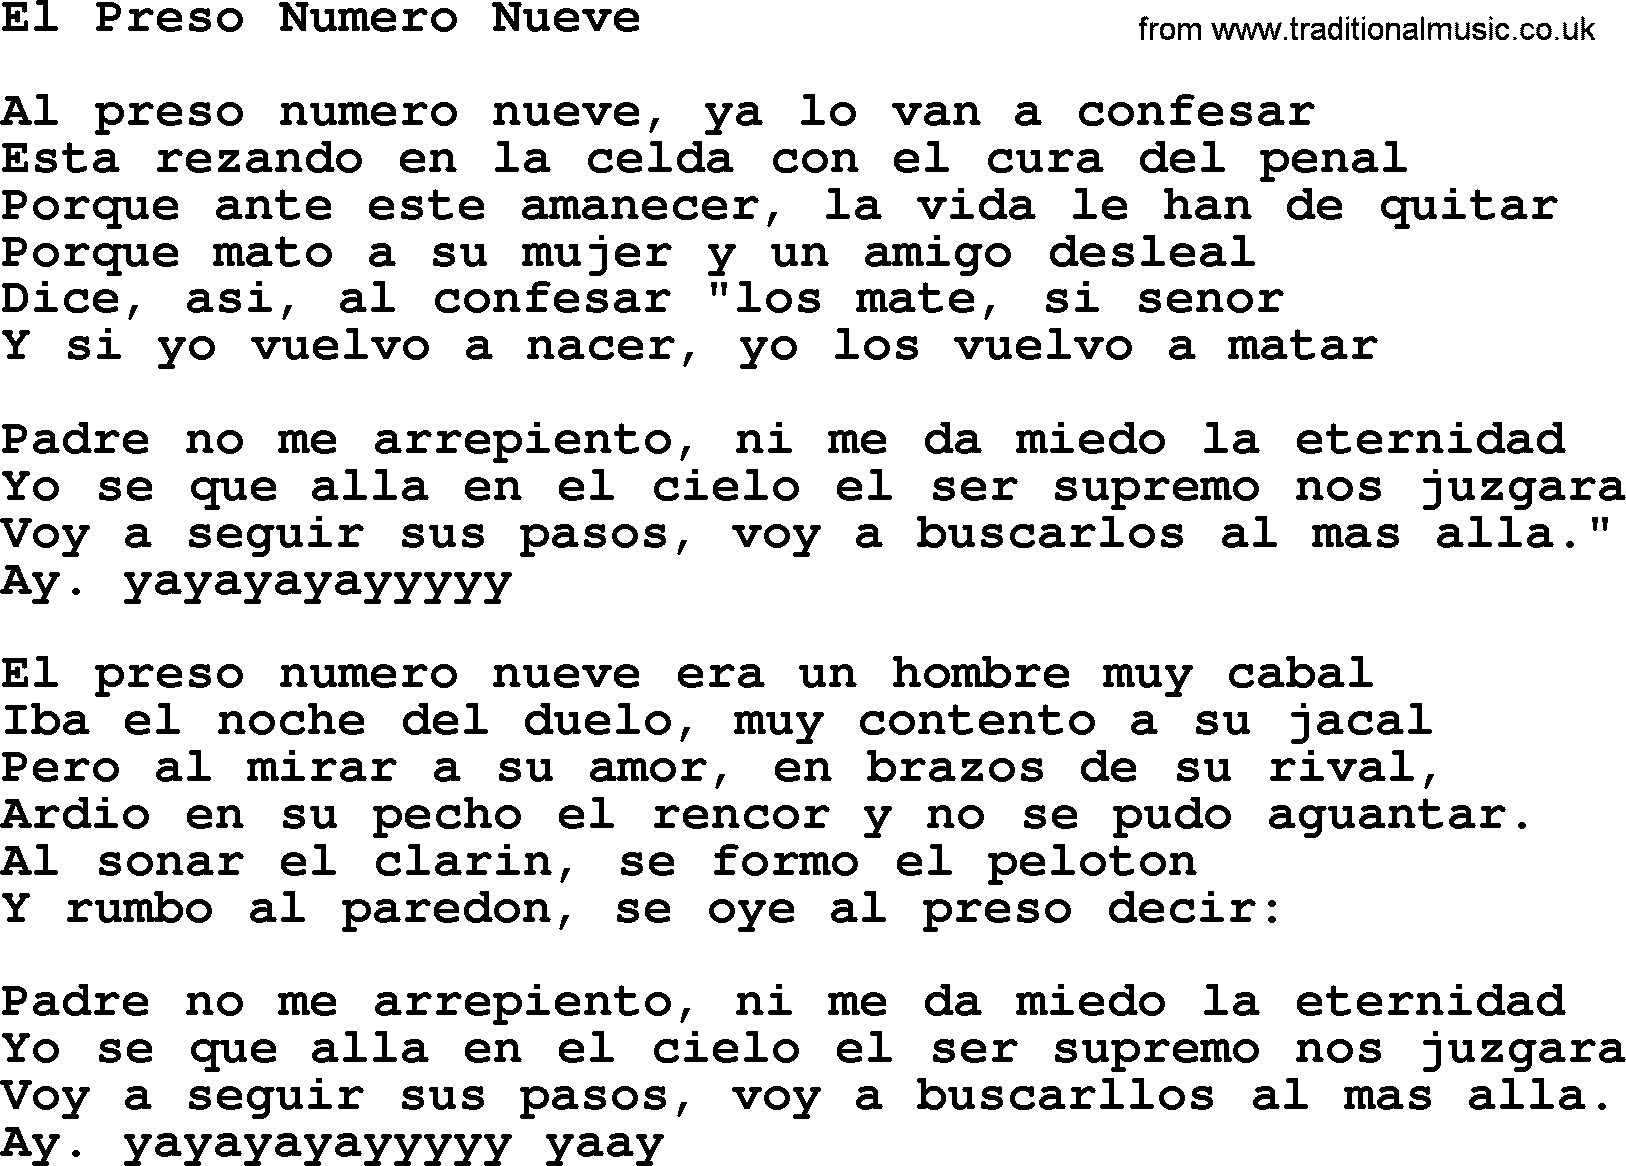 Joan Baez song El Preso Numero Nueve, lyrics